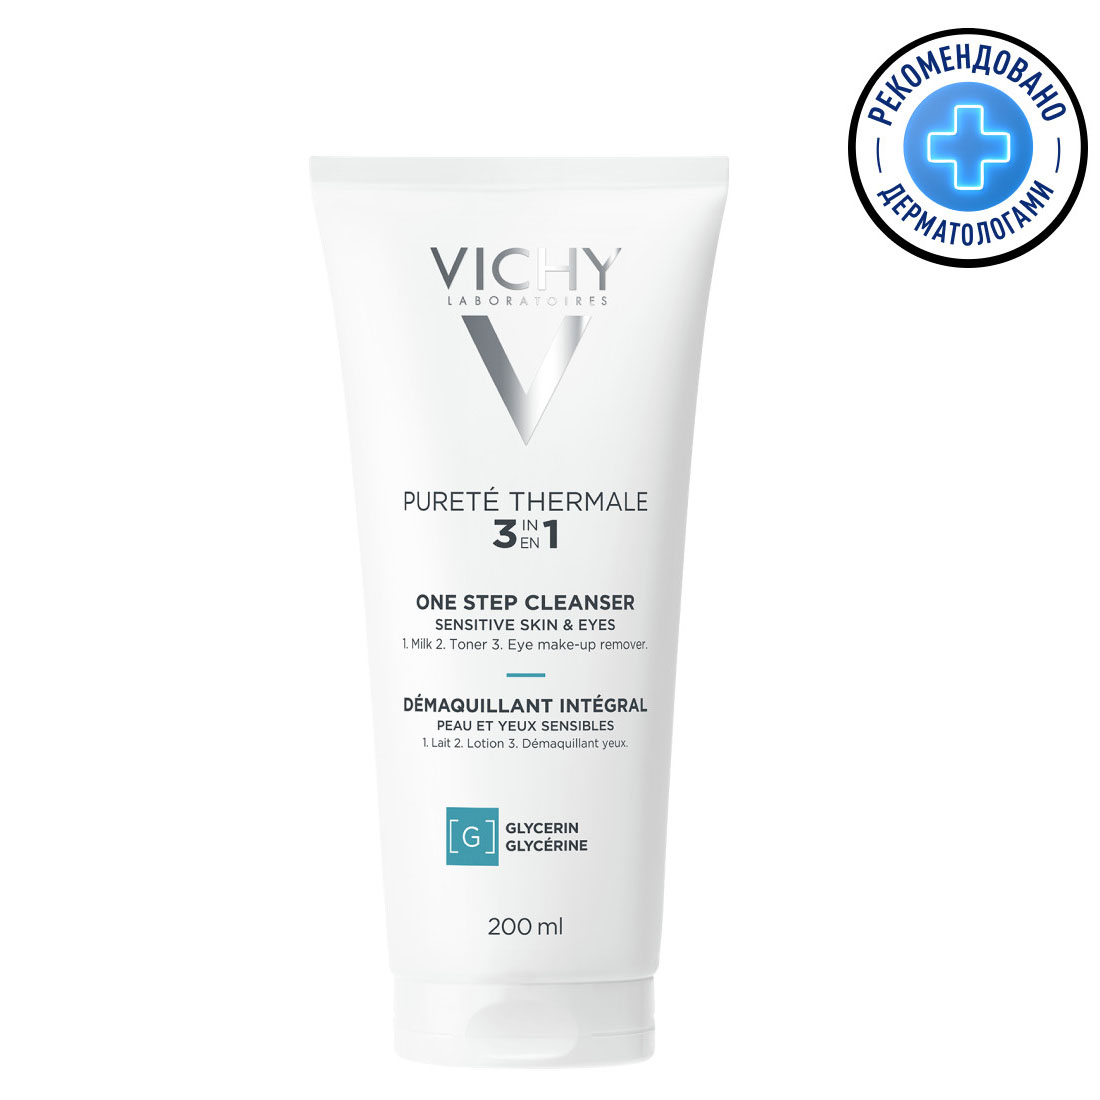 Vichy Очищающее средство универсальное для чувствительной кожи лица и вокруг глаз, 200 мл (Vichy, Purete Thermal) цена и фото